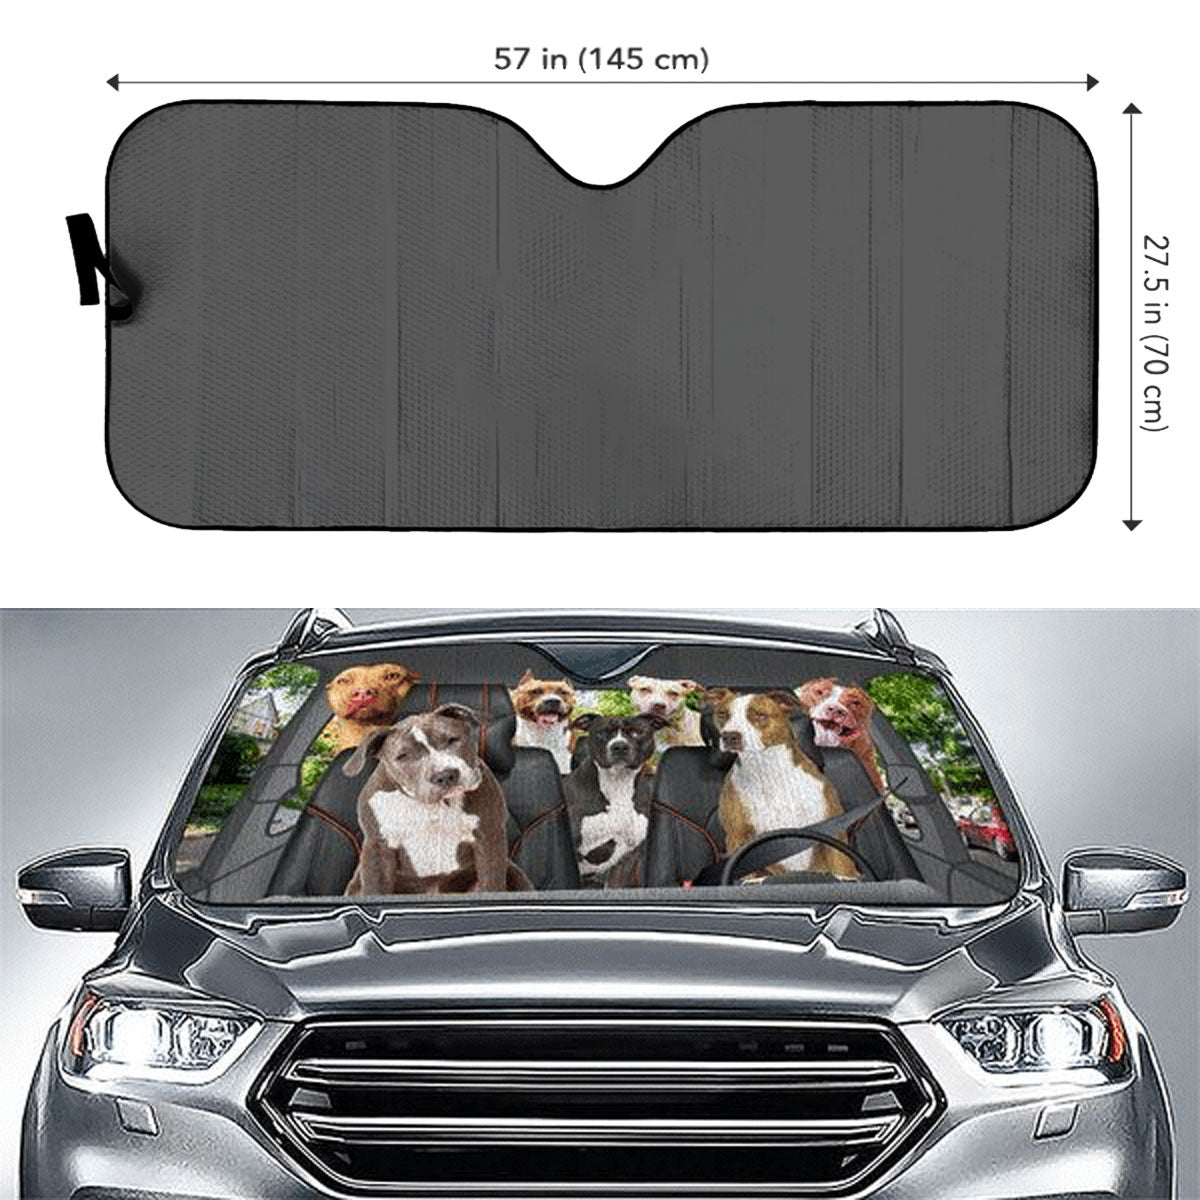 Custom Windshield Sun Shade for Car Pitbull Dog Driver Car Sun Shade - Car Accessory